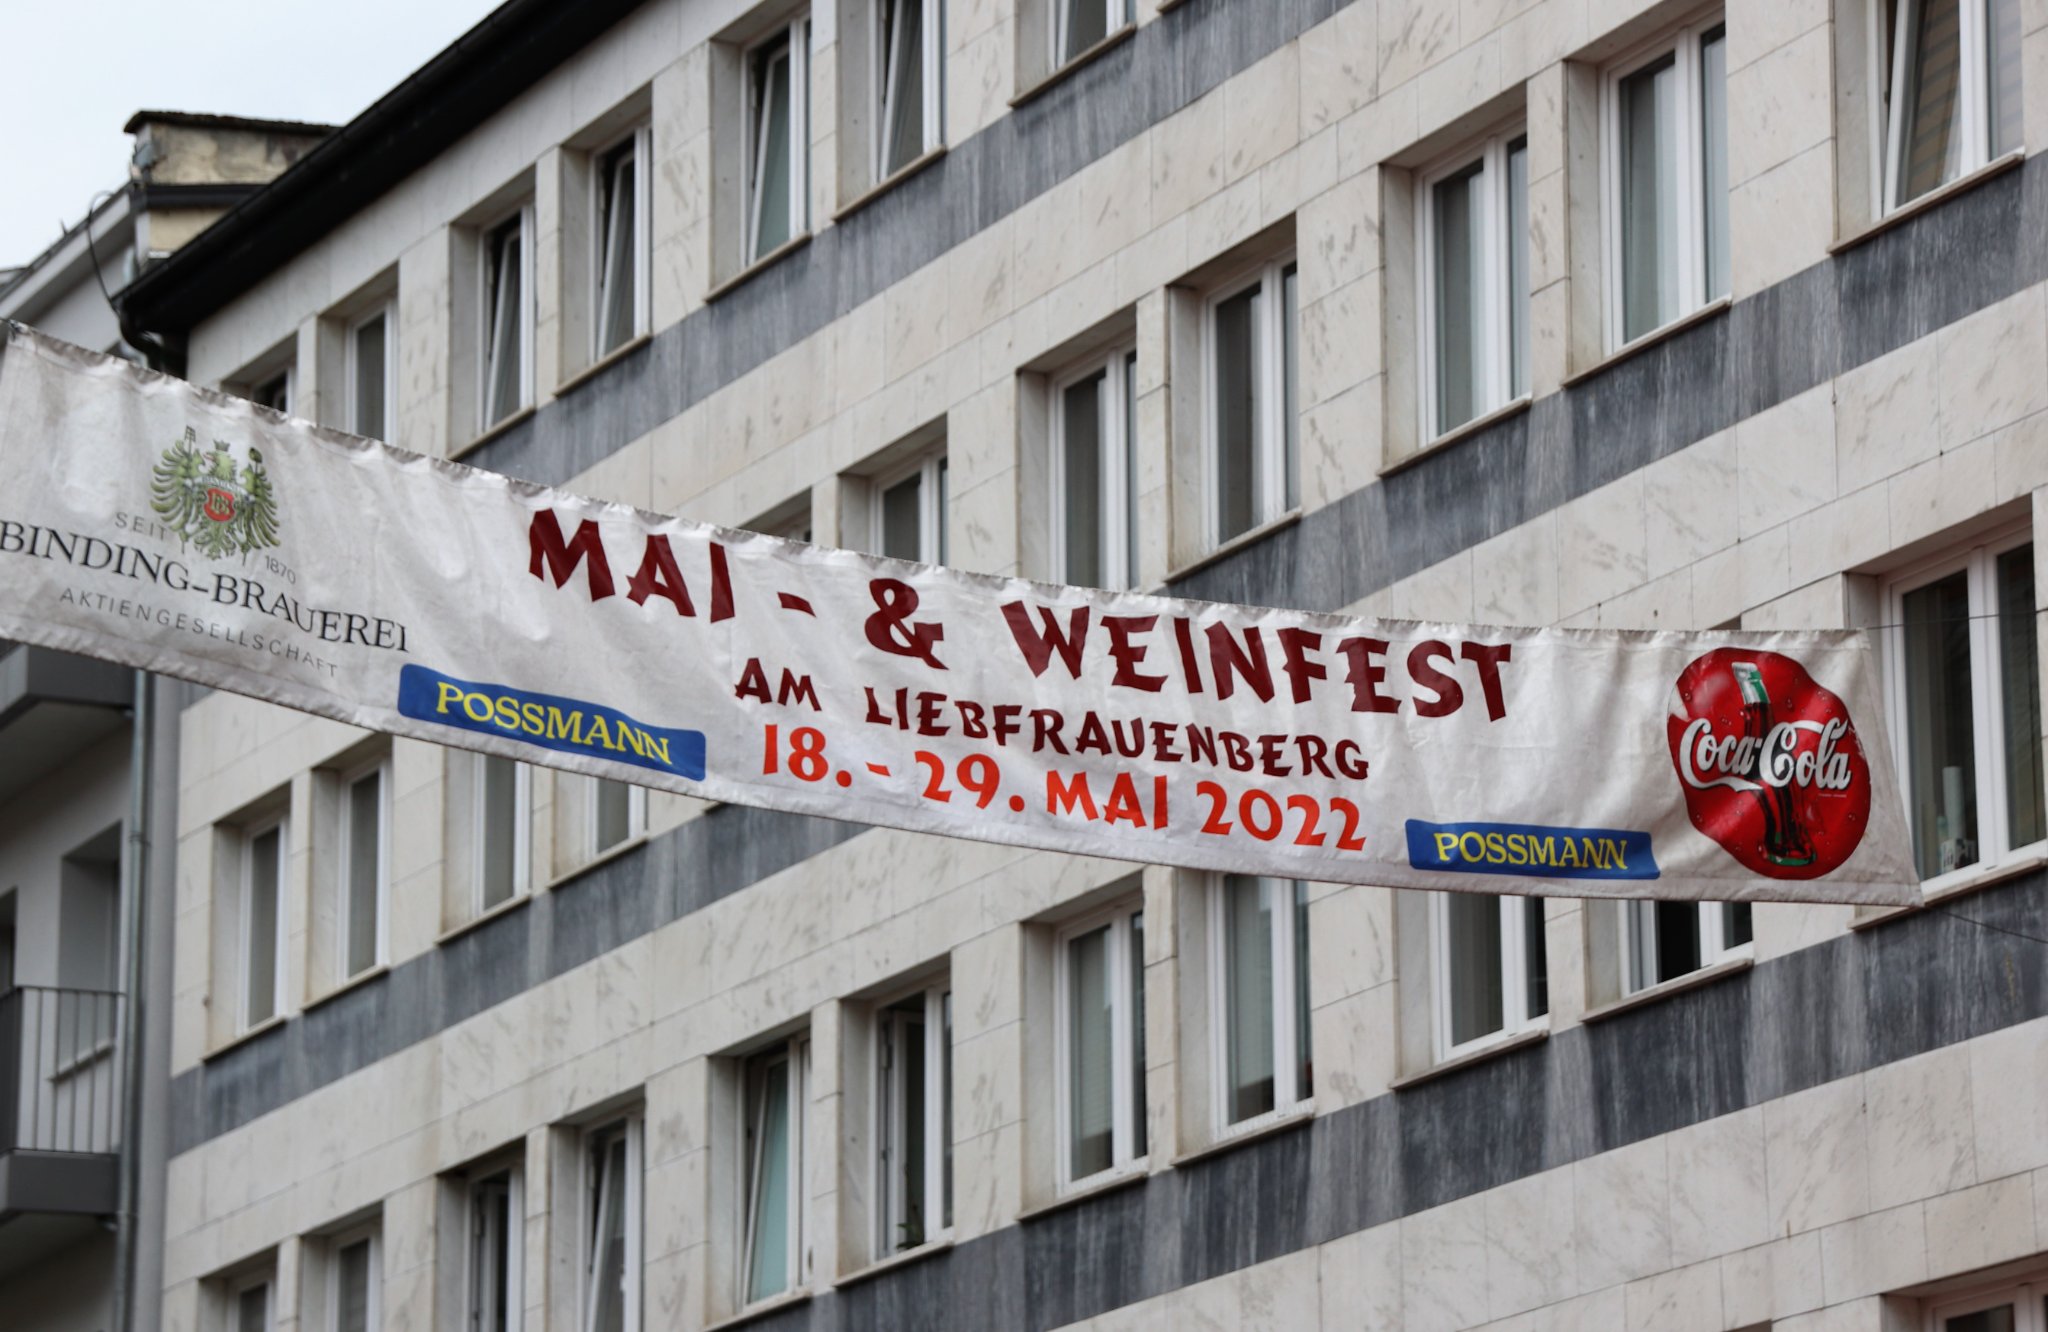  Mai & Weinfest am Liebfrauenberg. Fotos: Veranstaltungen< > 